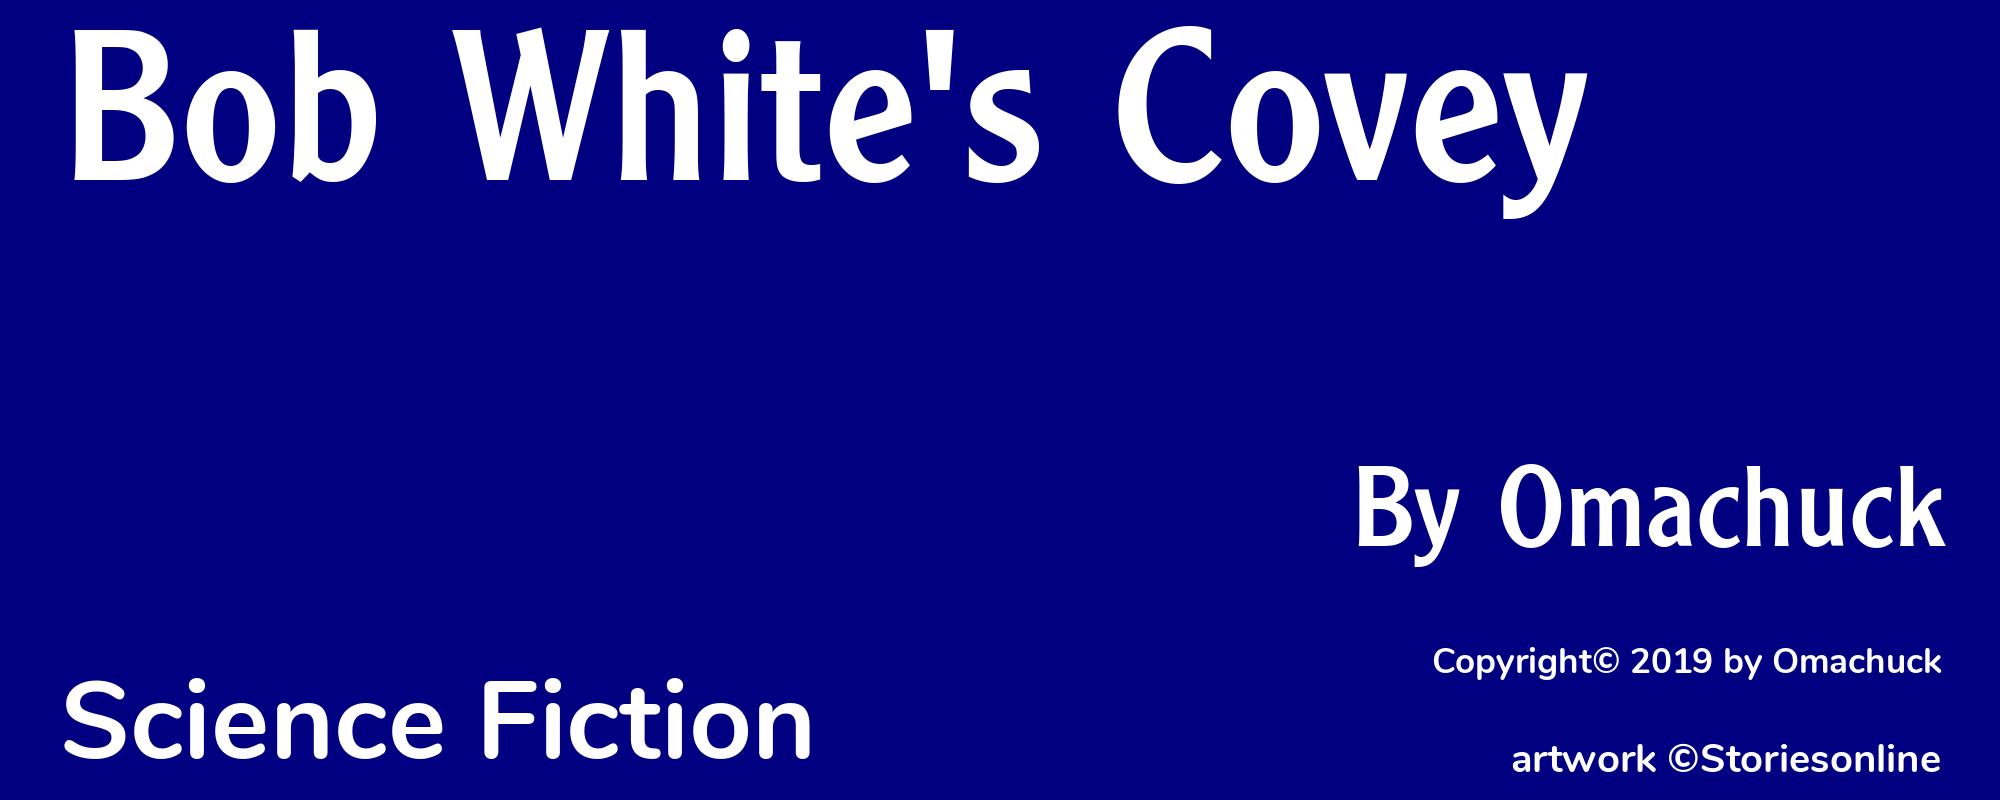 Bob White's Covey - Cover